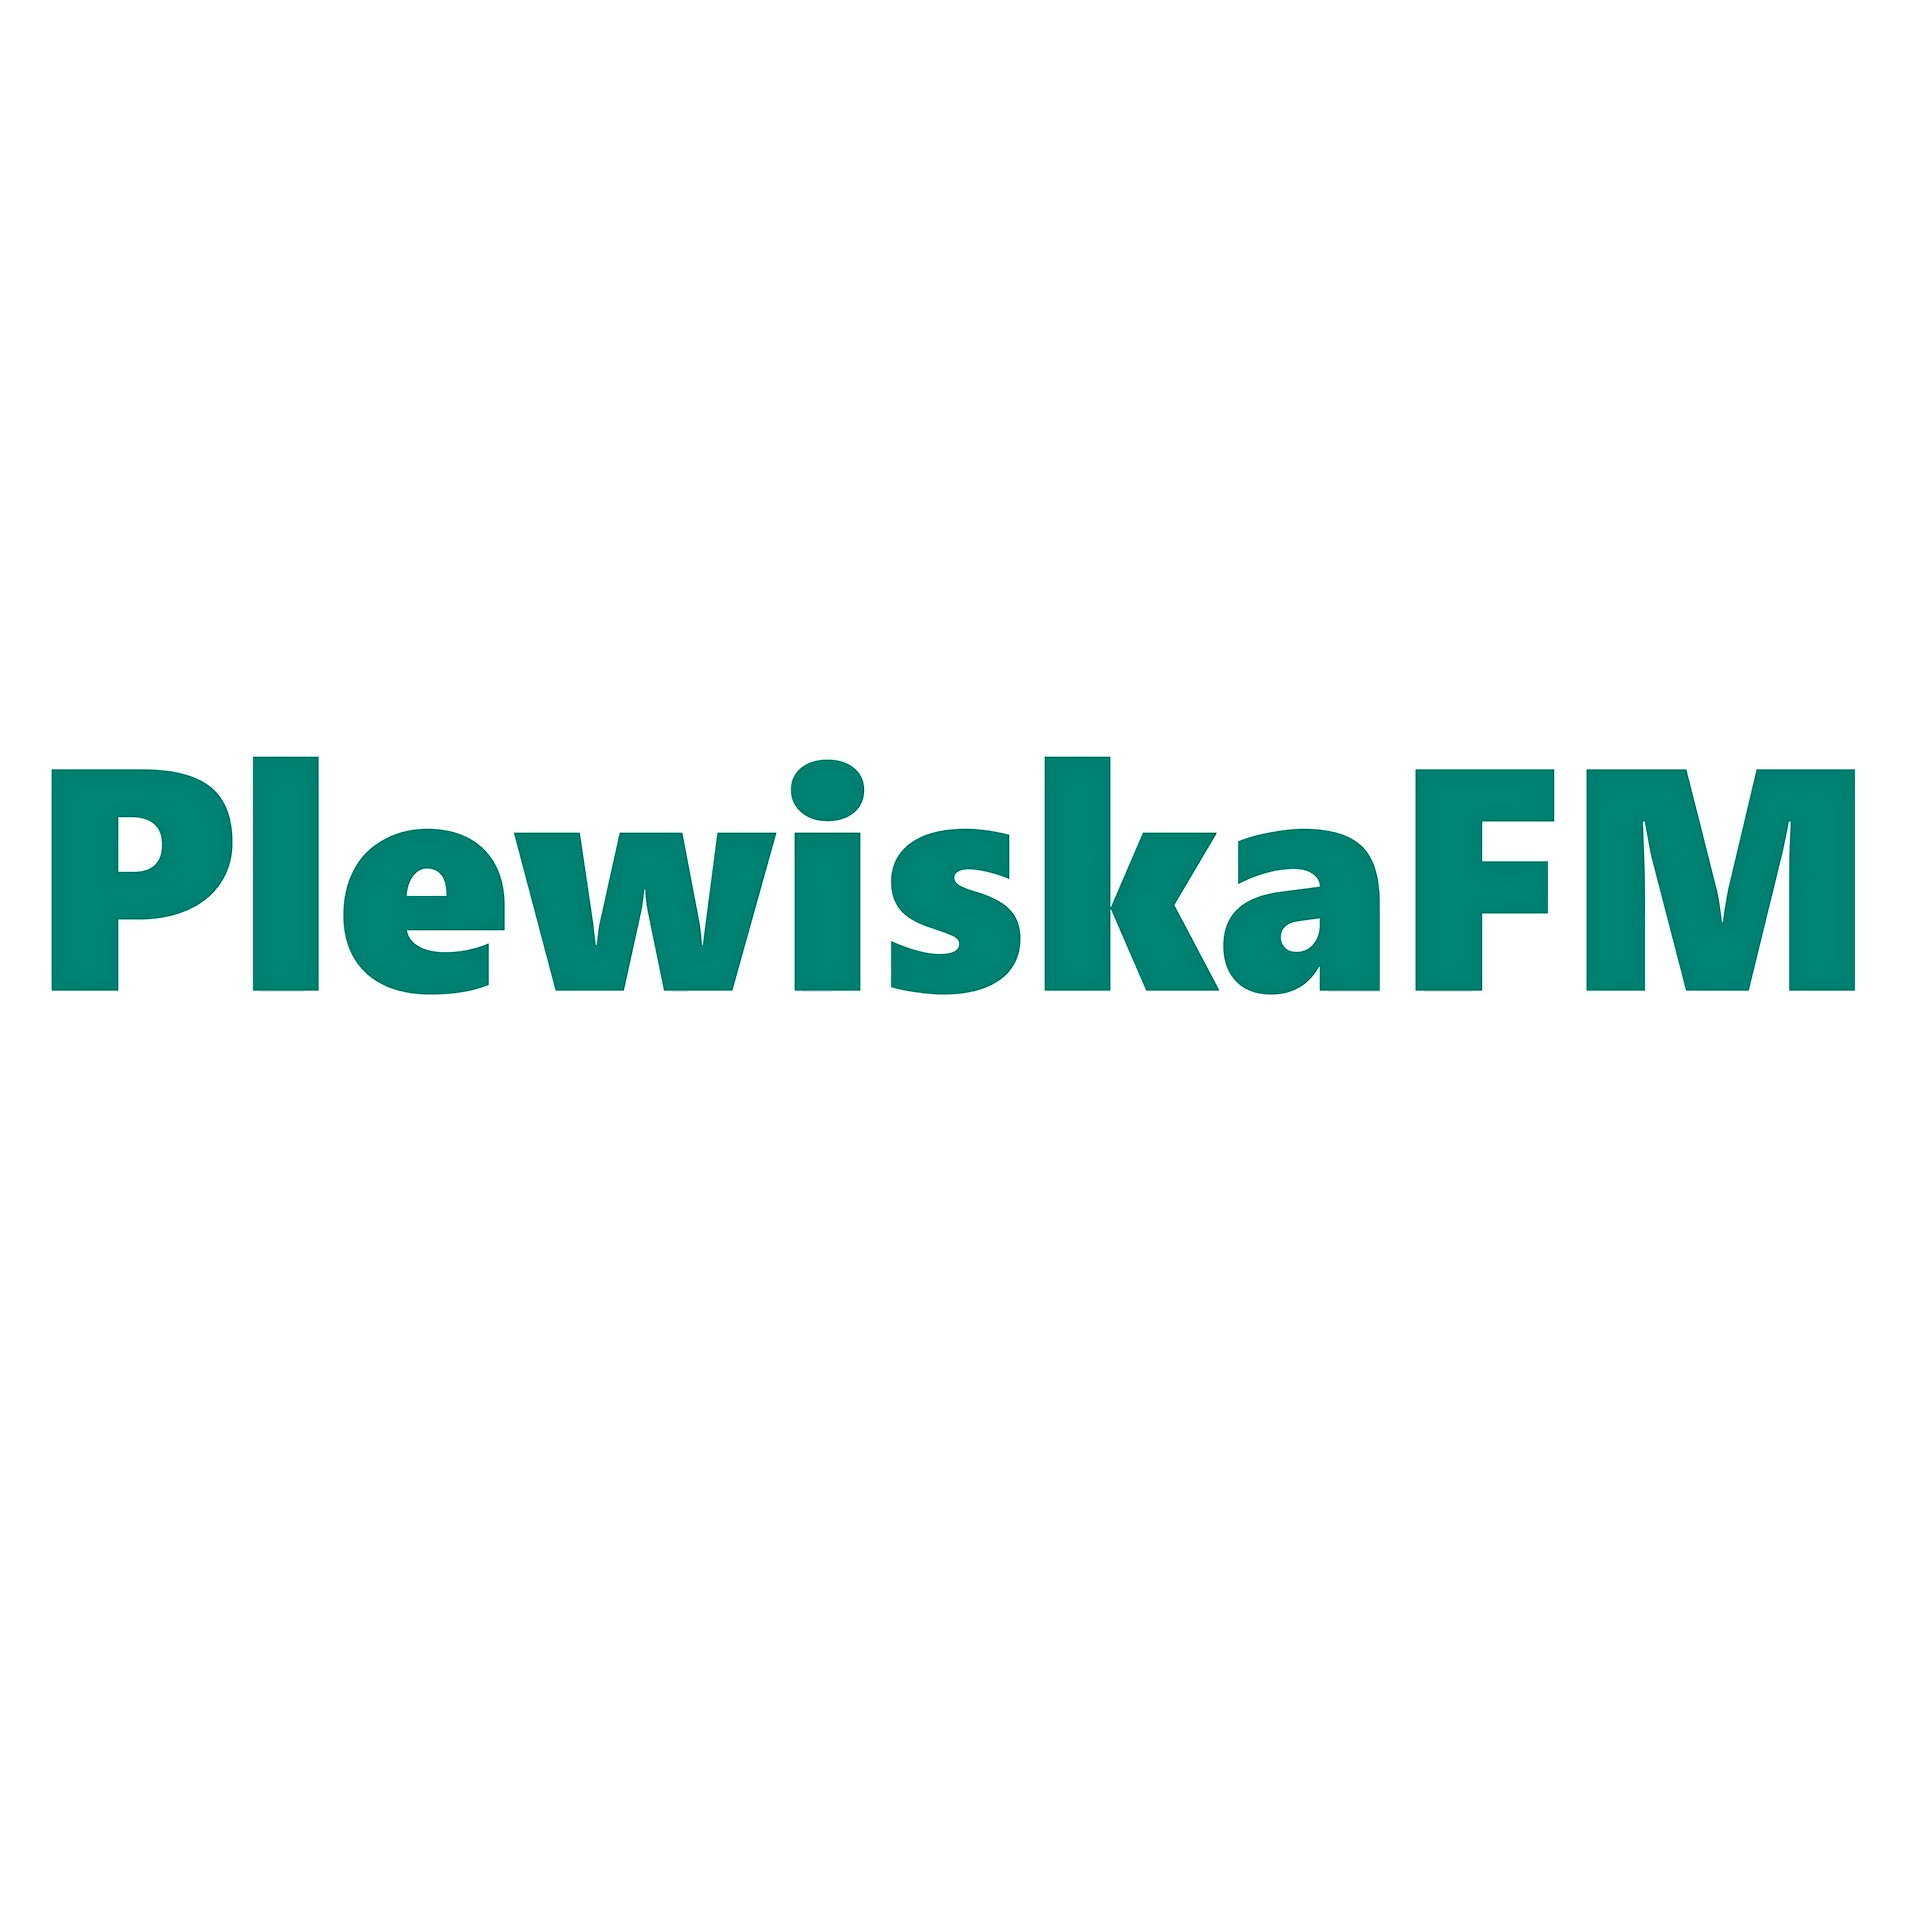 PlewiskaFM